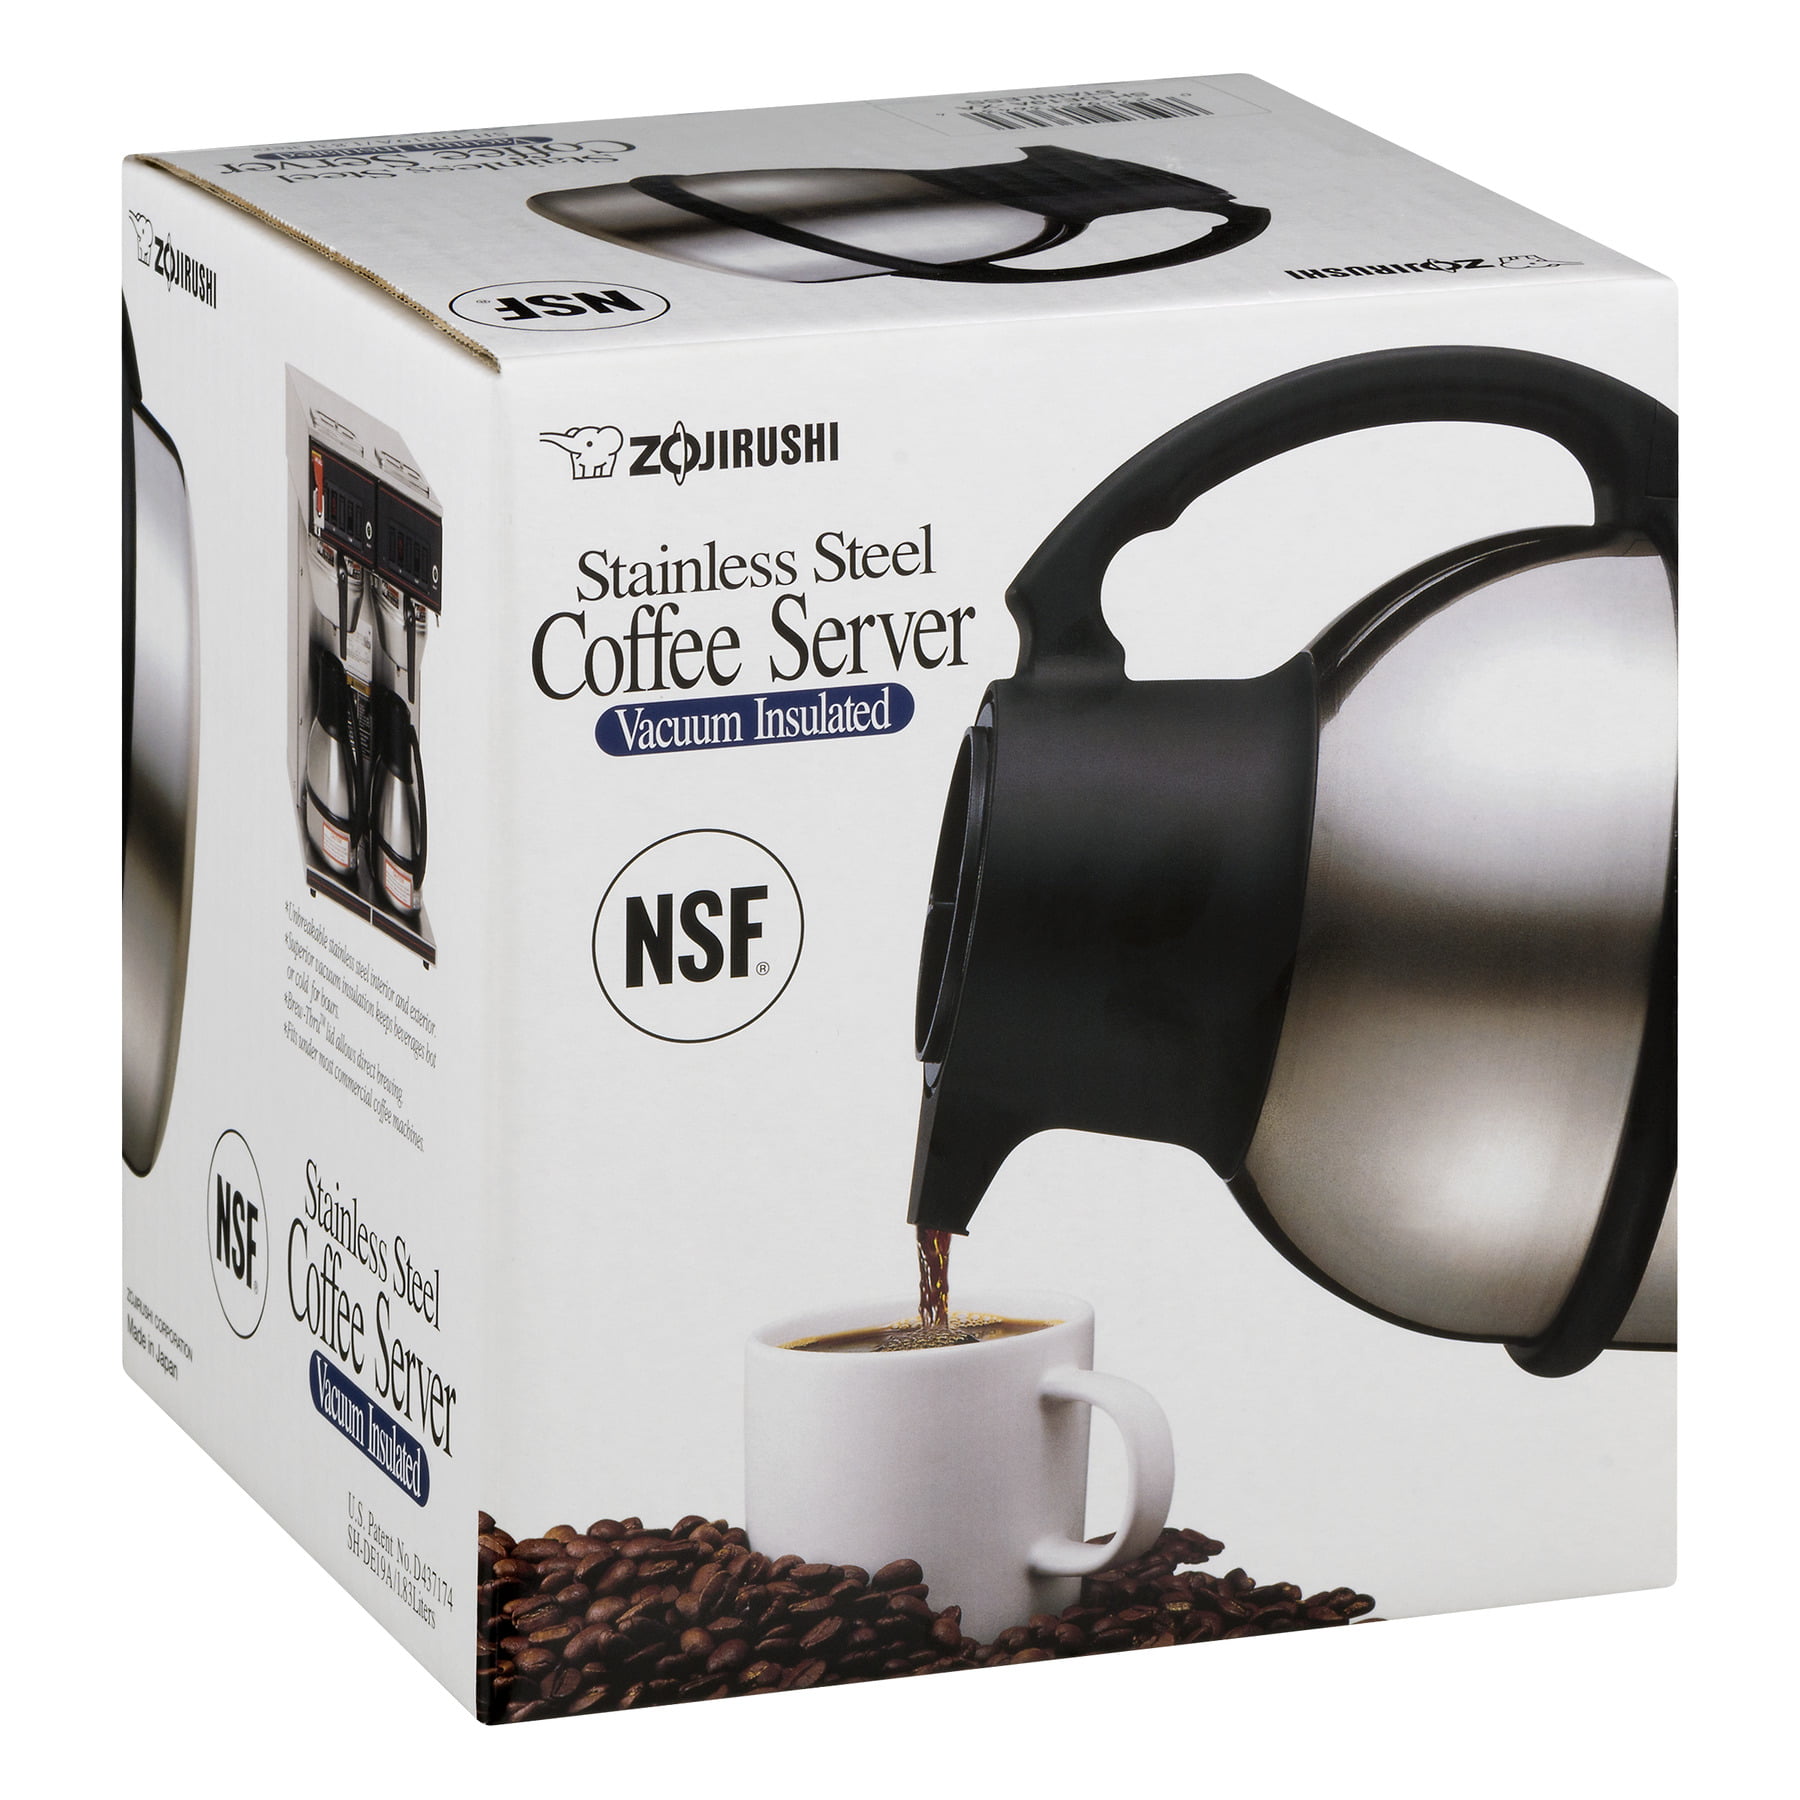 Zojirushi Stainless Steel Coffee Server Vacuum Insulated, 1.0 CT